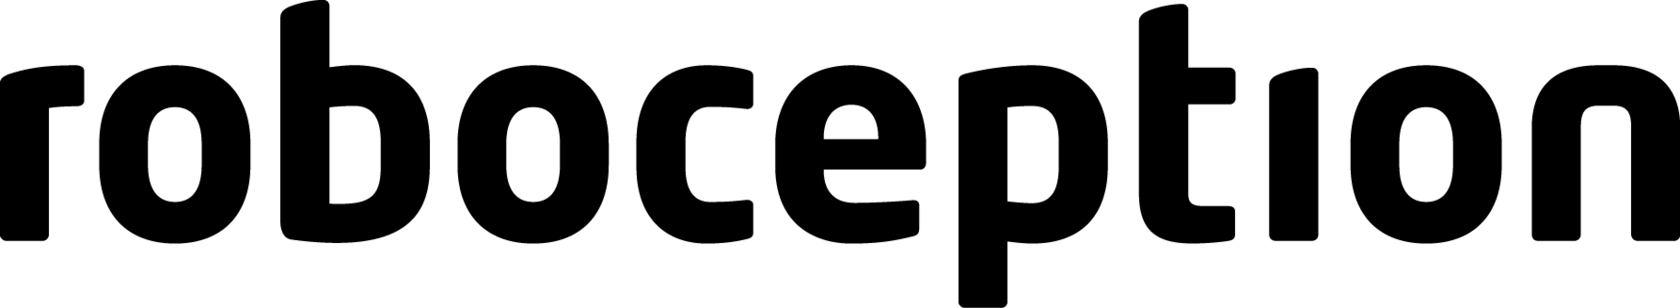 roboception logo